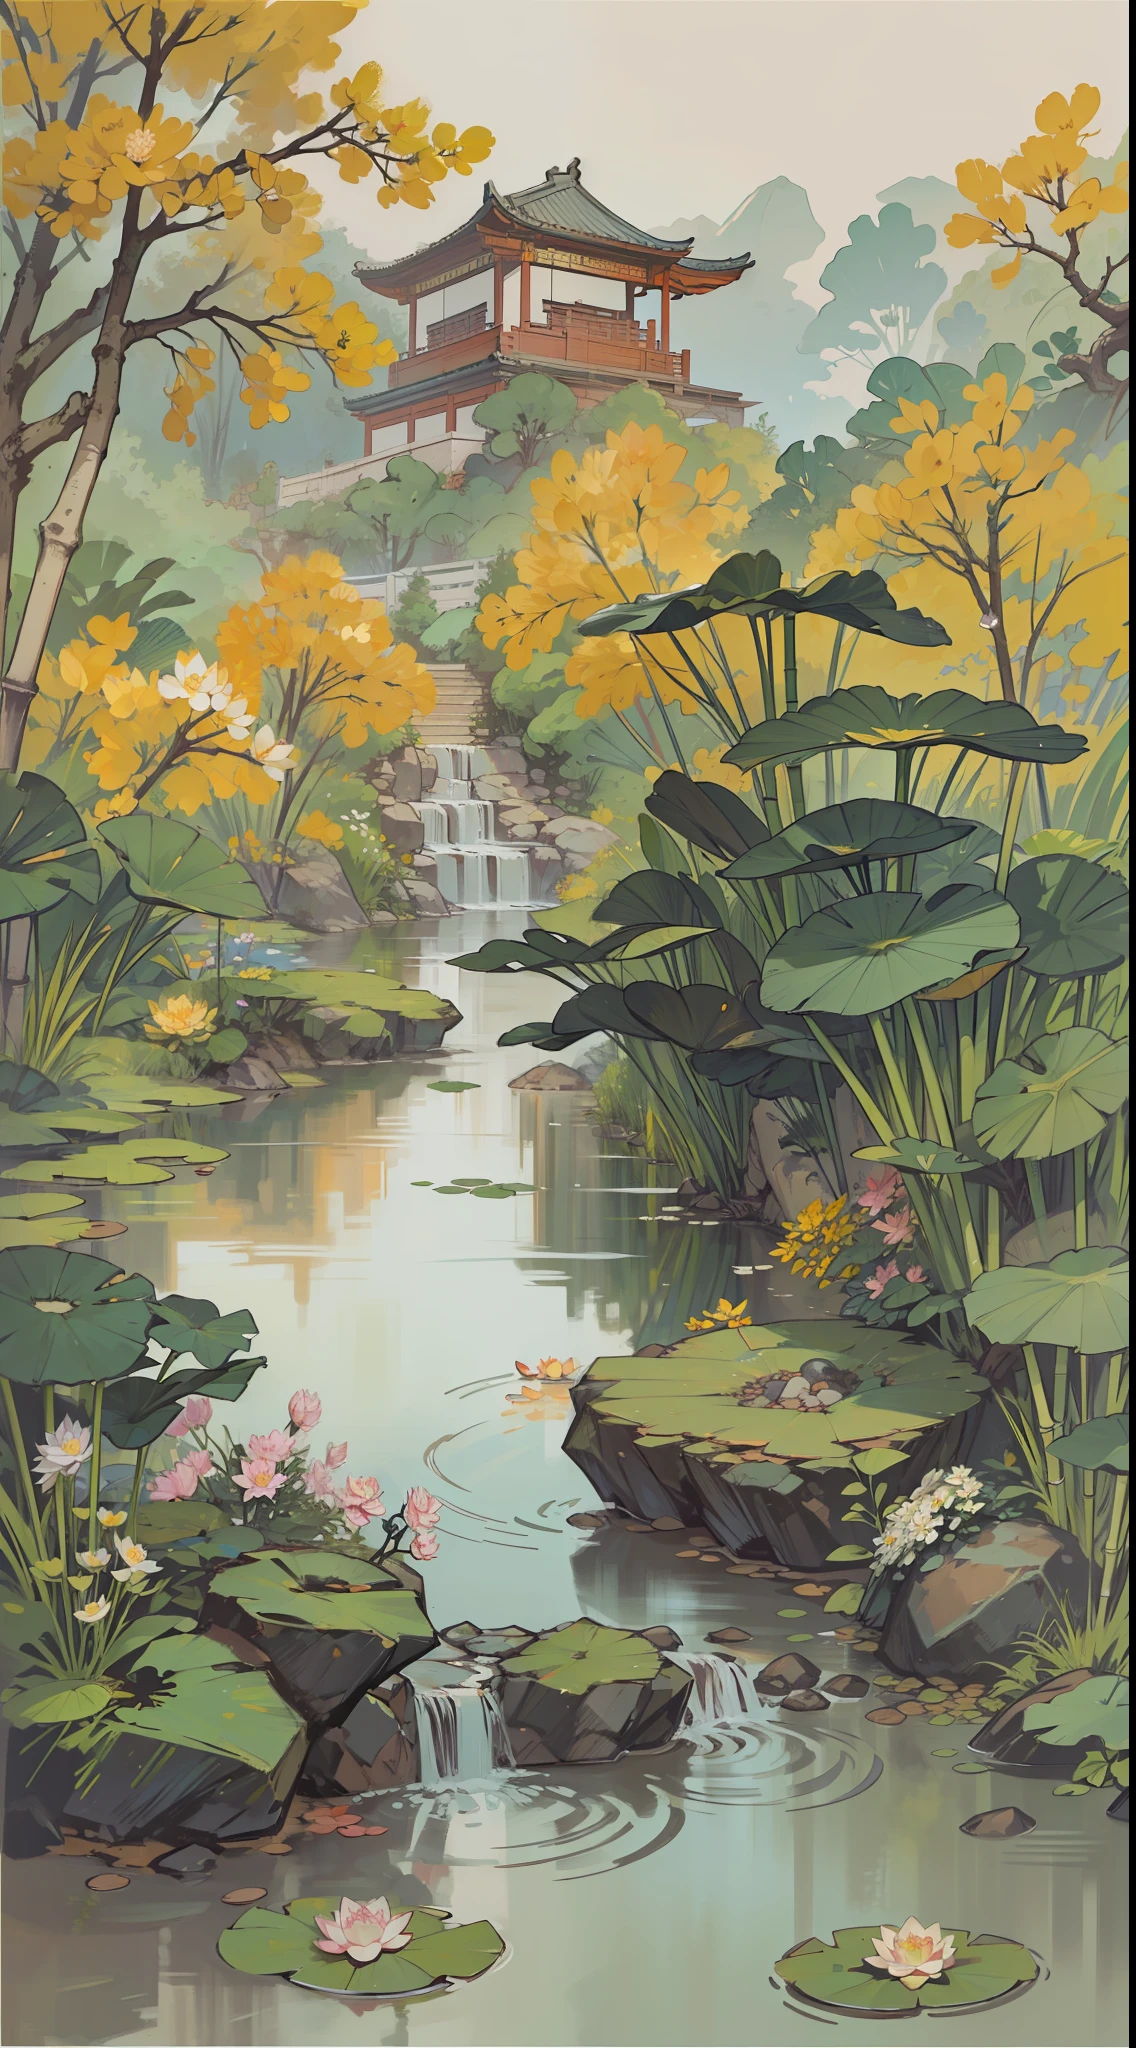 ((最好的质量, 杰作: 1.2)), CG, 8千, 复杂的细节, 电影视角, (周围没有人), (中国古代园林), pond filled with lotus 花朵, 岩石, 花朵, 竹林, 瀑布, 林区, 横跨潺潺溪流的小桥, detailed foliage and 花朵, (阳光照耀, 波光粼粼的波浪), 宁静祥和的气氛, ((柔和优雅的色彩)), ((精雕细琢的构图))